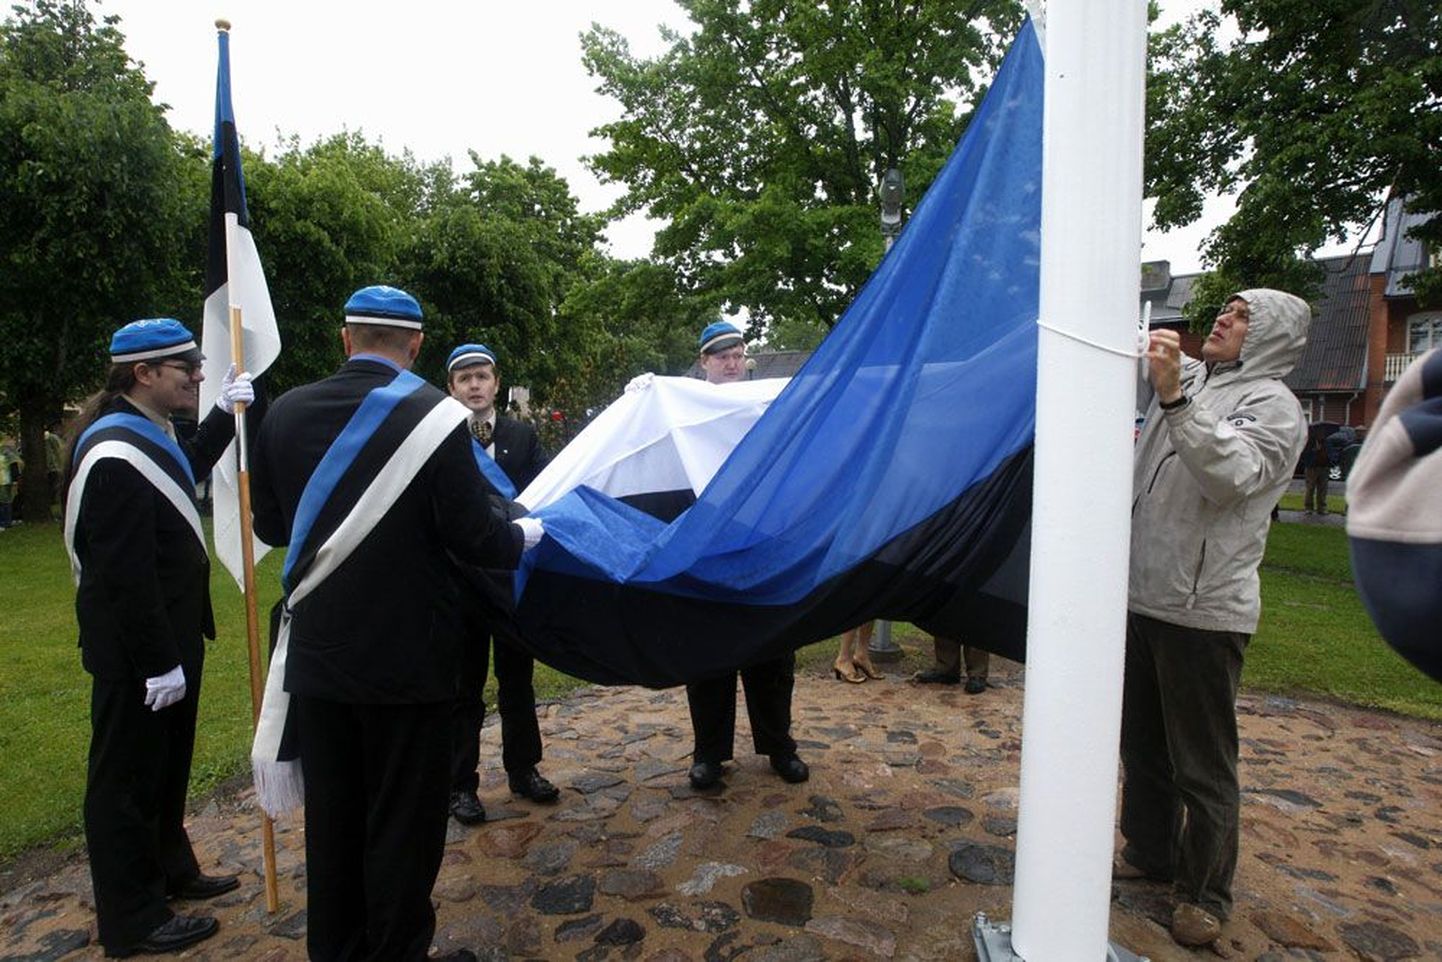 Eesti lipu 125. aastapäevaks heisati Otepää Lipuväljakul uude lipumasti esimest korda trikoloor. Pildil on paremalt Urma Kuldmaa, Martin Häidberg, Mikk Vainik, Karl-Kristjan Koit ja Madis Raaper (seljaga).